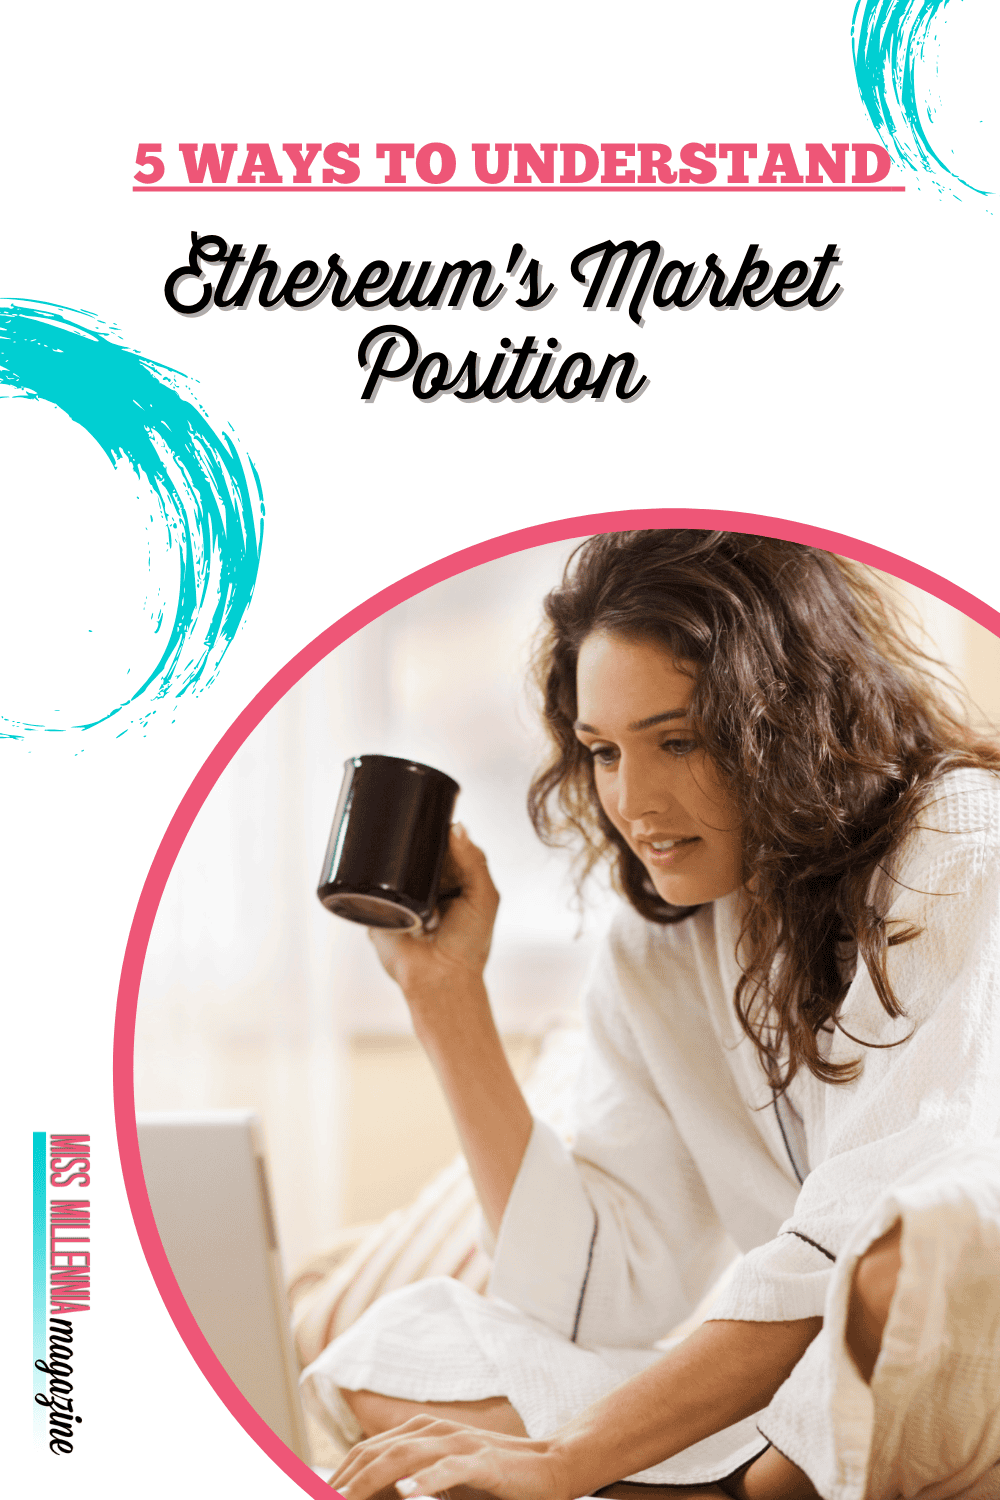 5 Ways To Understand Ethereum’s Market Position